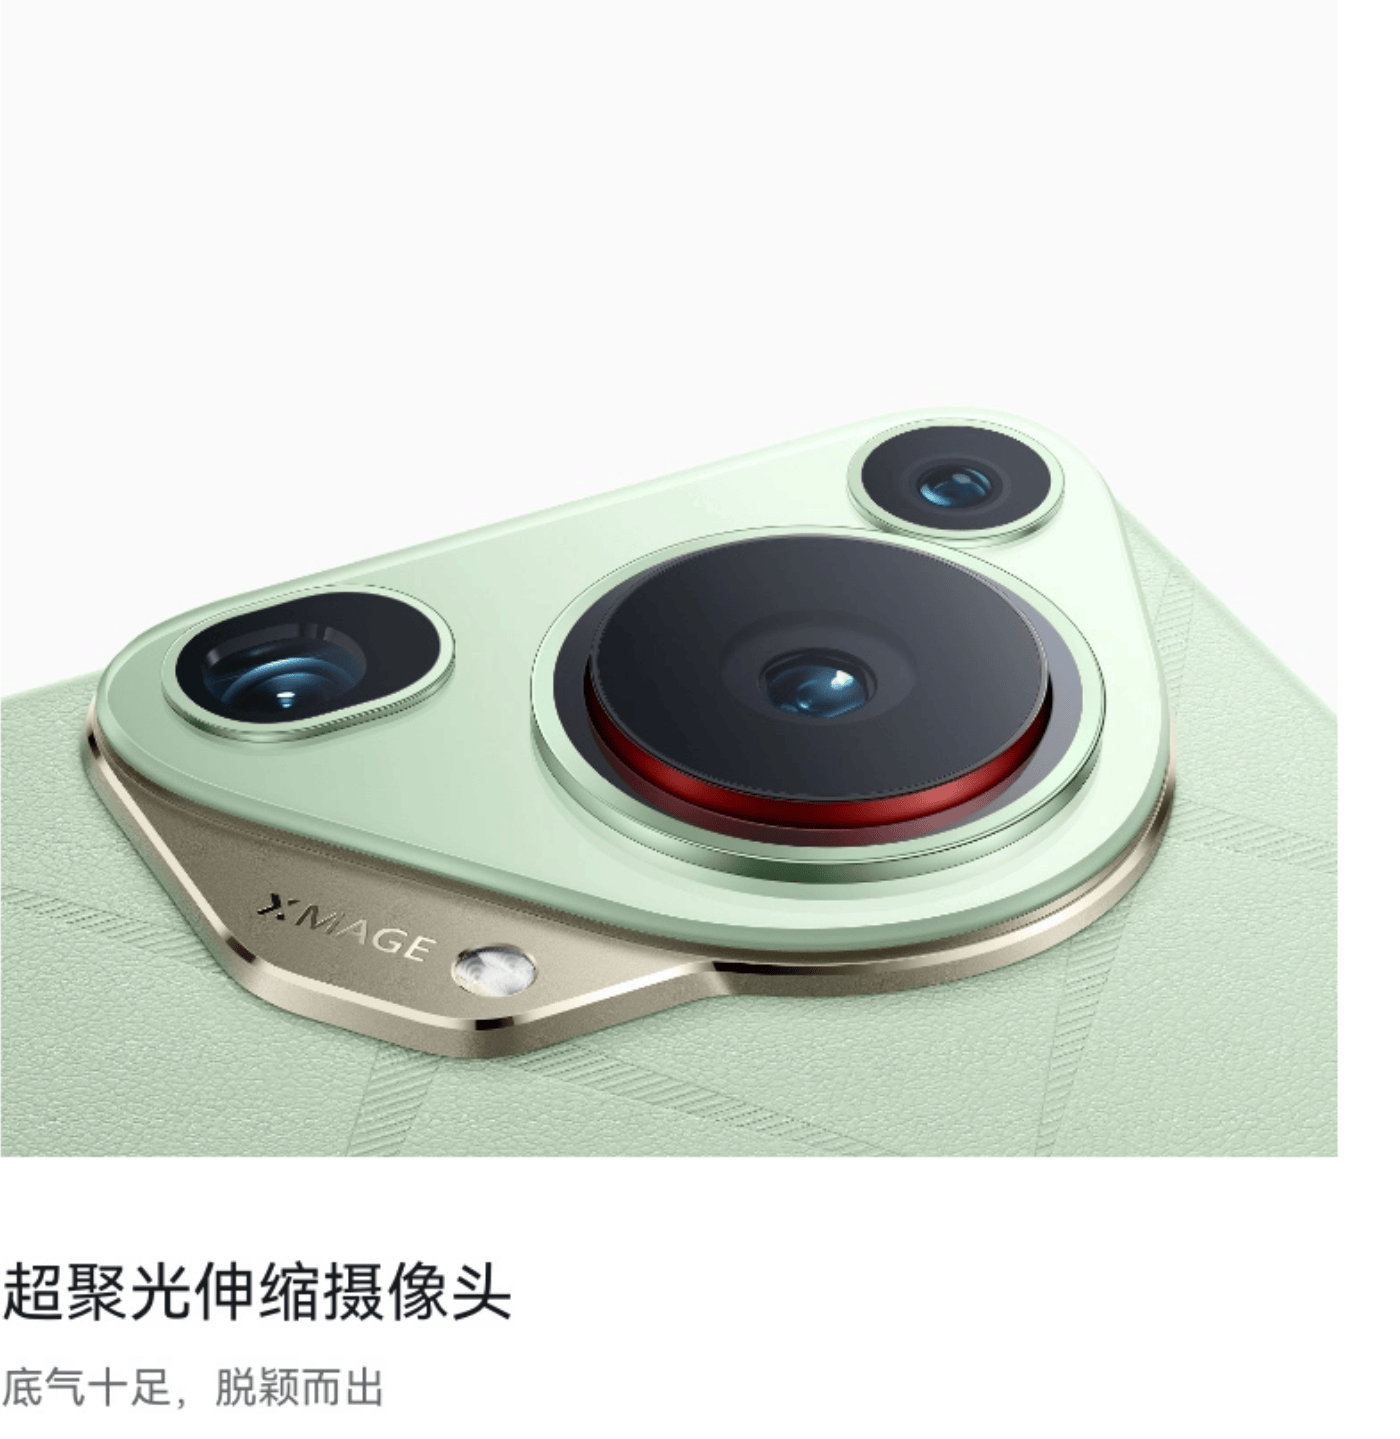 Huawei Pura70 Series Camera